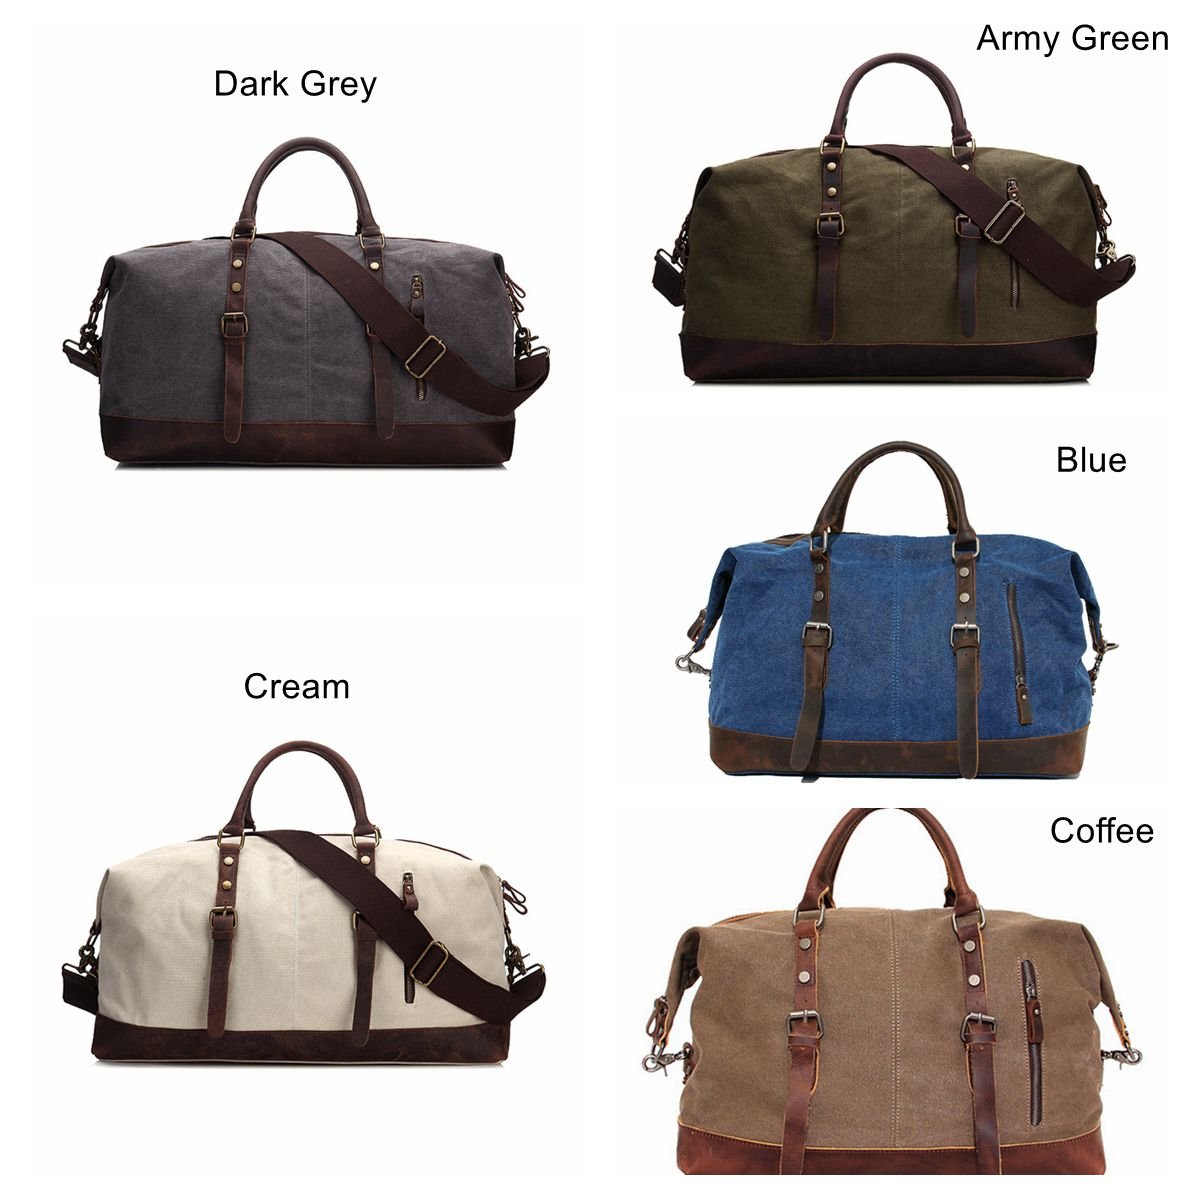 Travel Bag Weekender Duffel Bag for Men Canvas Duffel Bag 